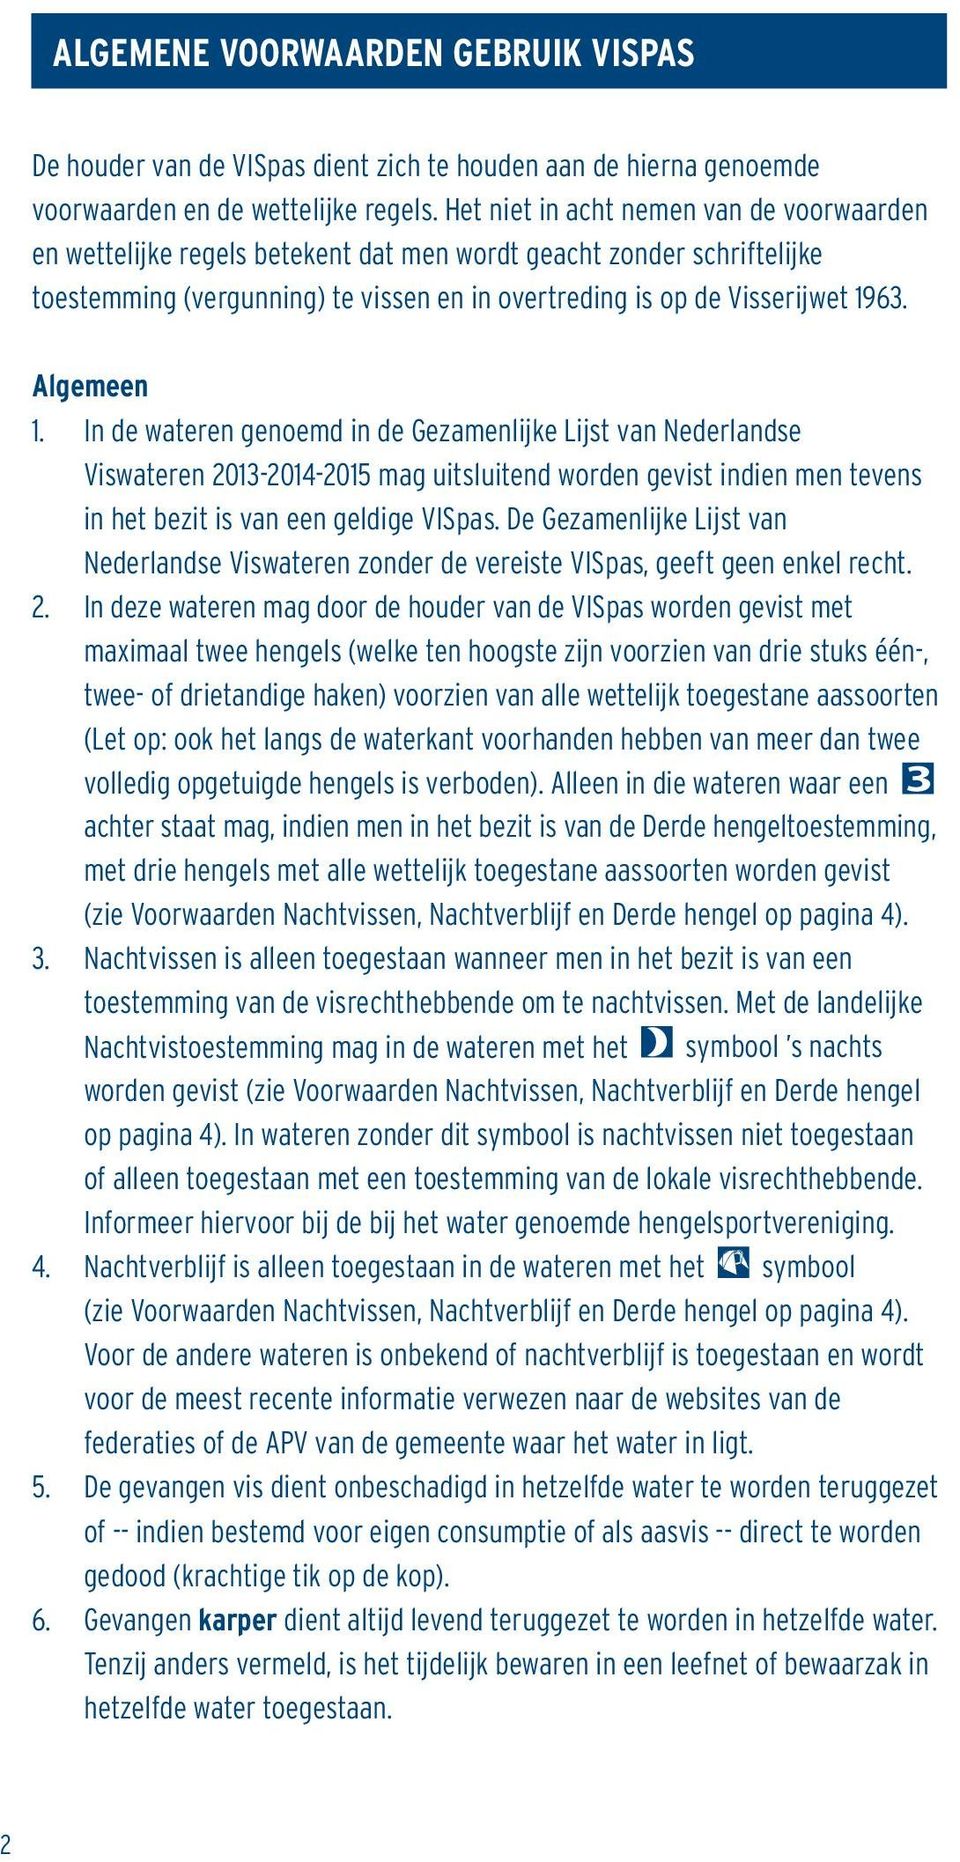 Algemeen 1. In de wateren genoemd in de Gezamenlijke Lijst van Nederlandse Viswateren 2013-2014-2015 mag uitsluitend worden gevist indien men tevens in het bezit is van een geldige VISpas.